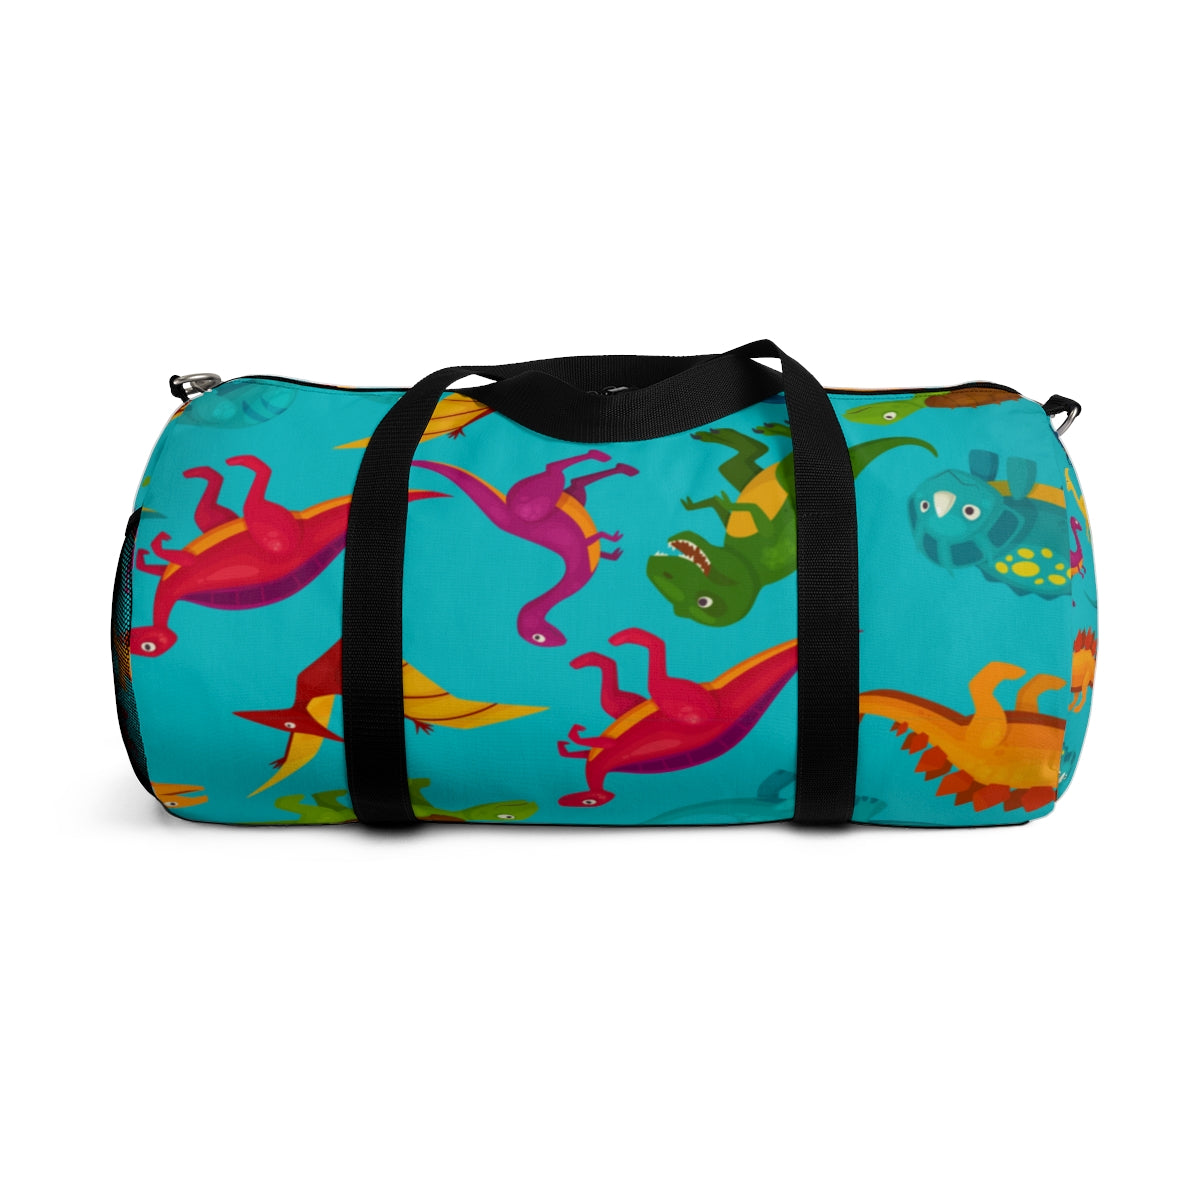 Kids Dinosaurs Duffle Bag Travel Weekender Gym Luggage